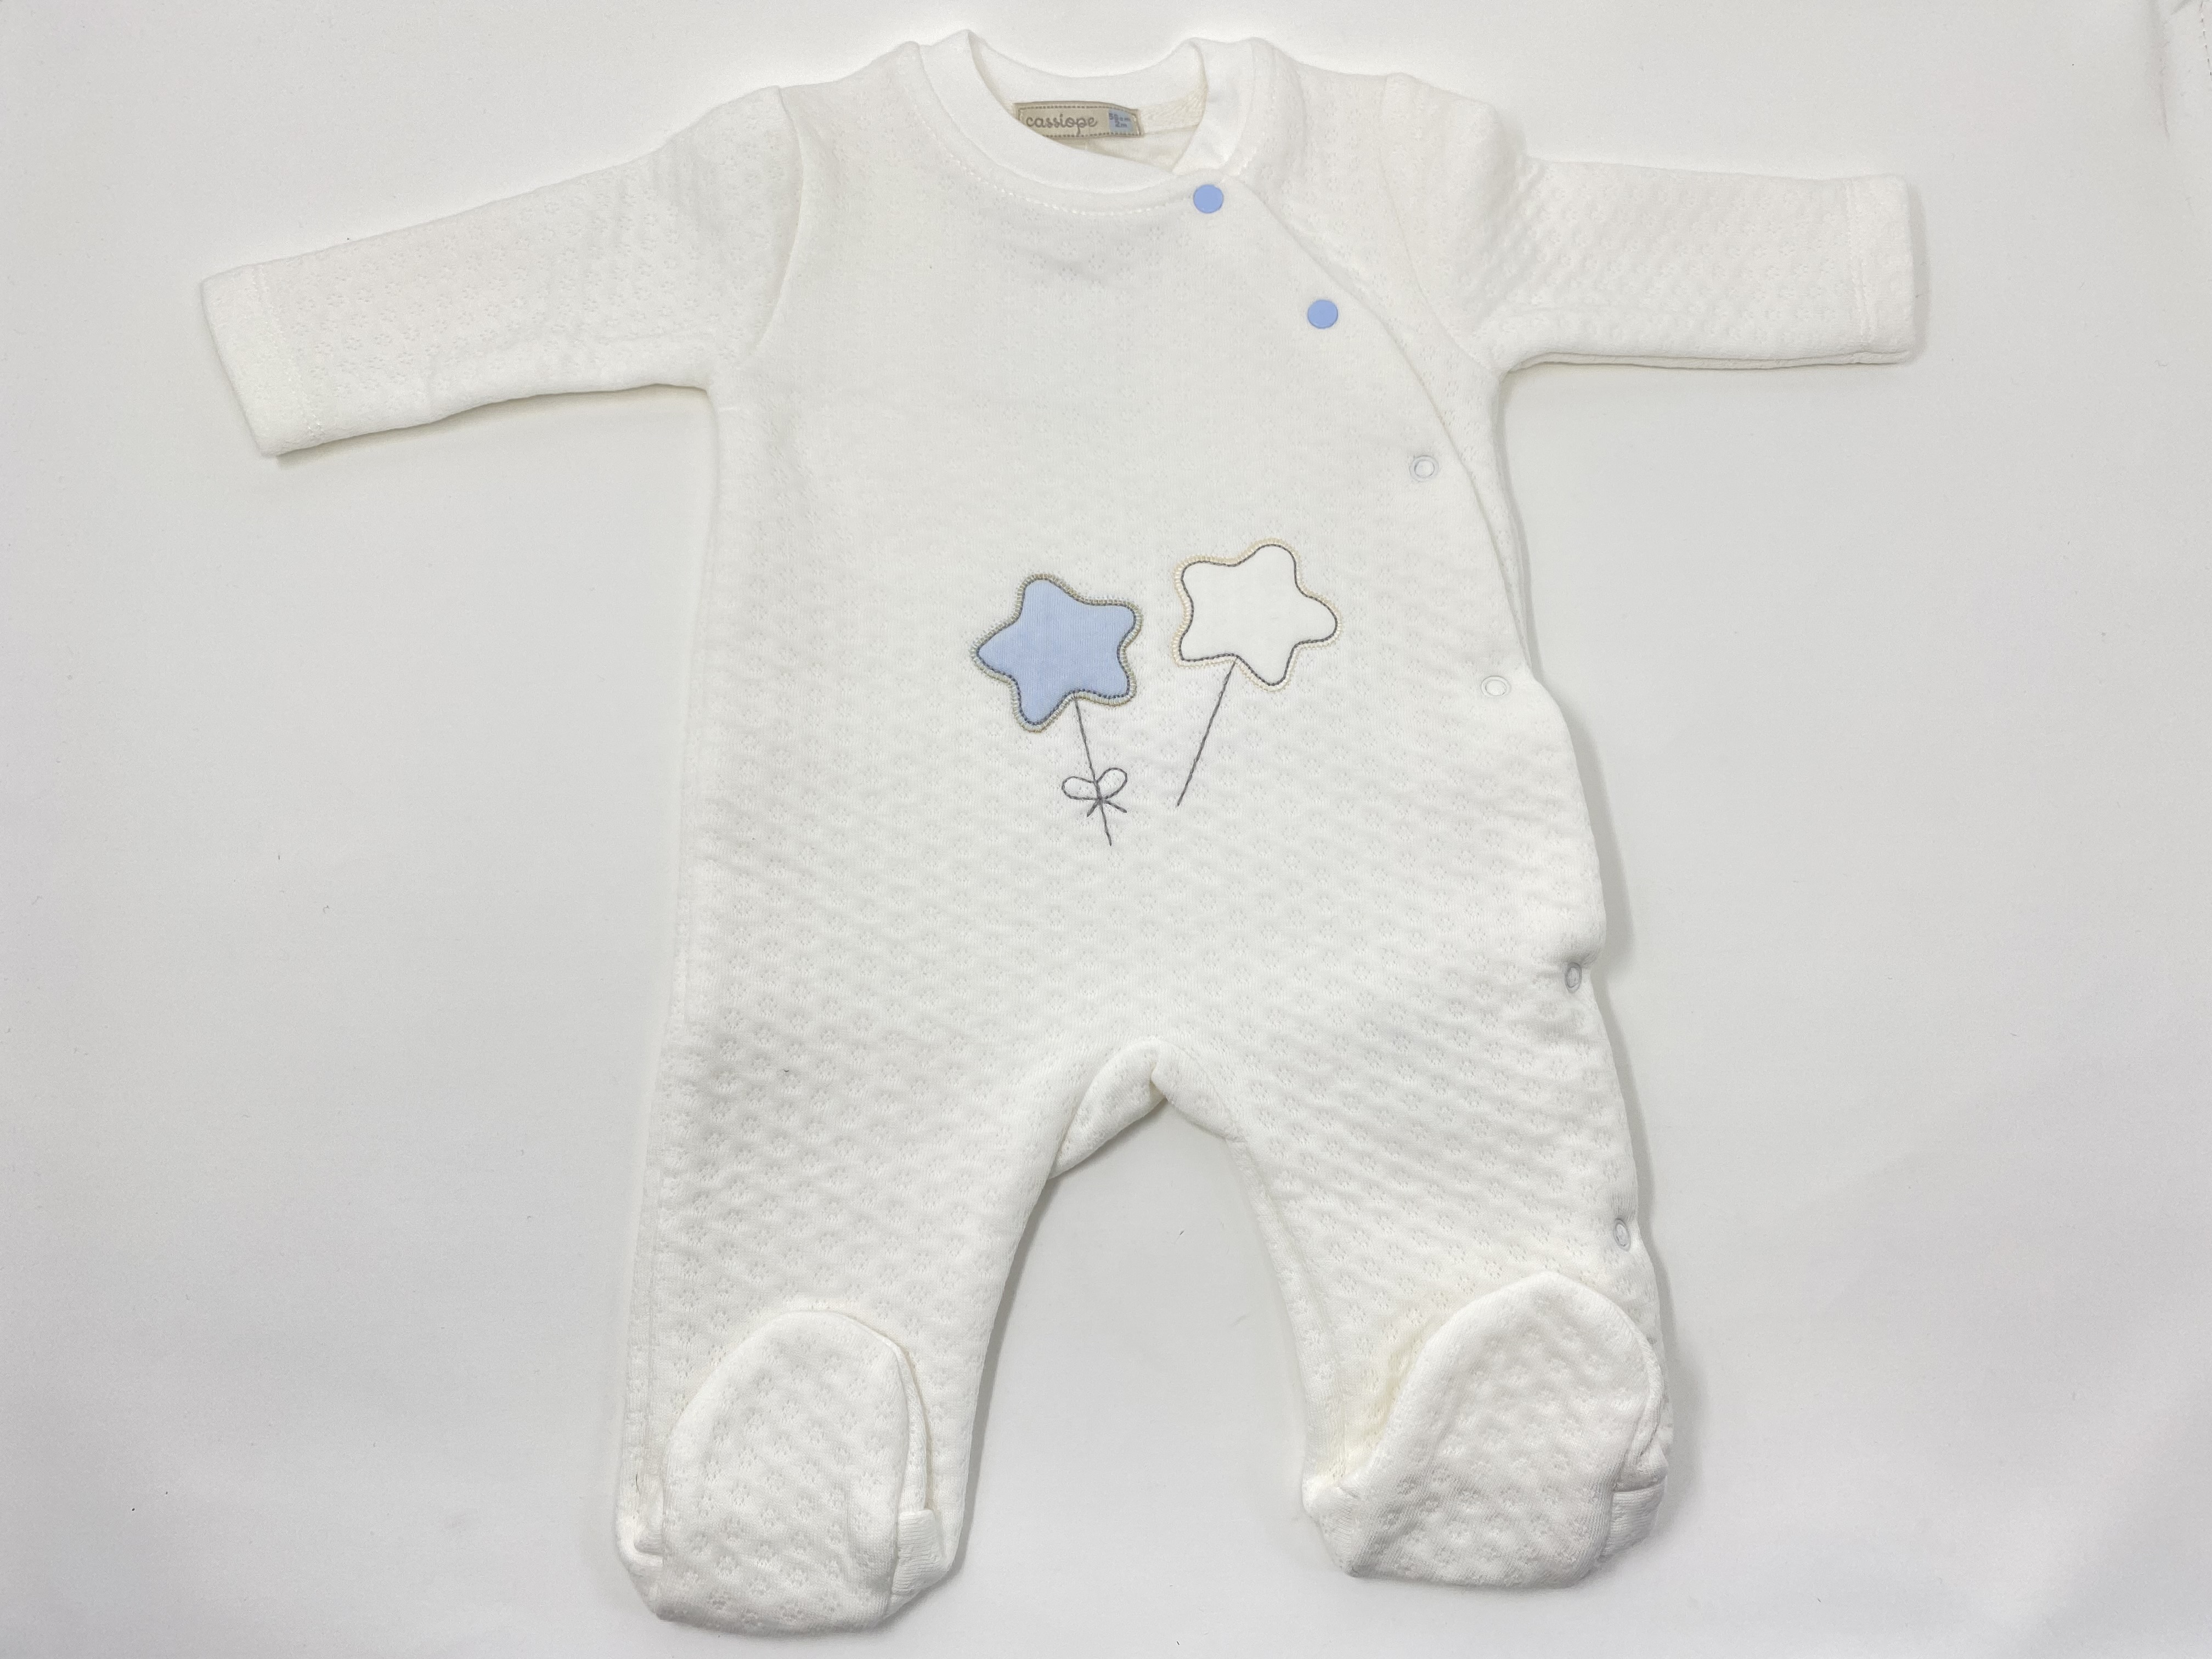 Baby Strampler Einteiler Overall Langarm mit Sternchen Applikation - Hellblau -